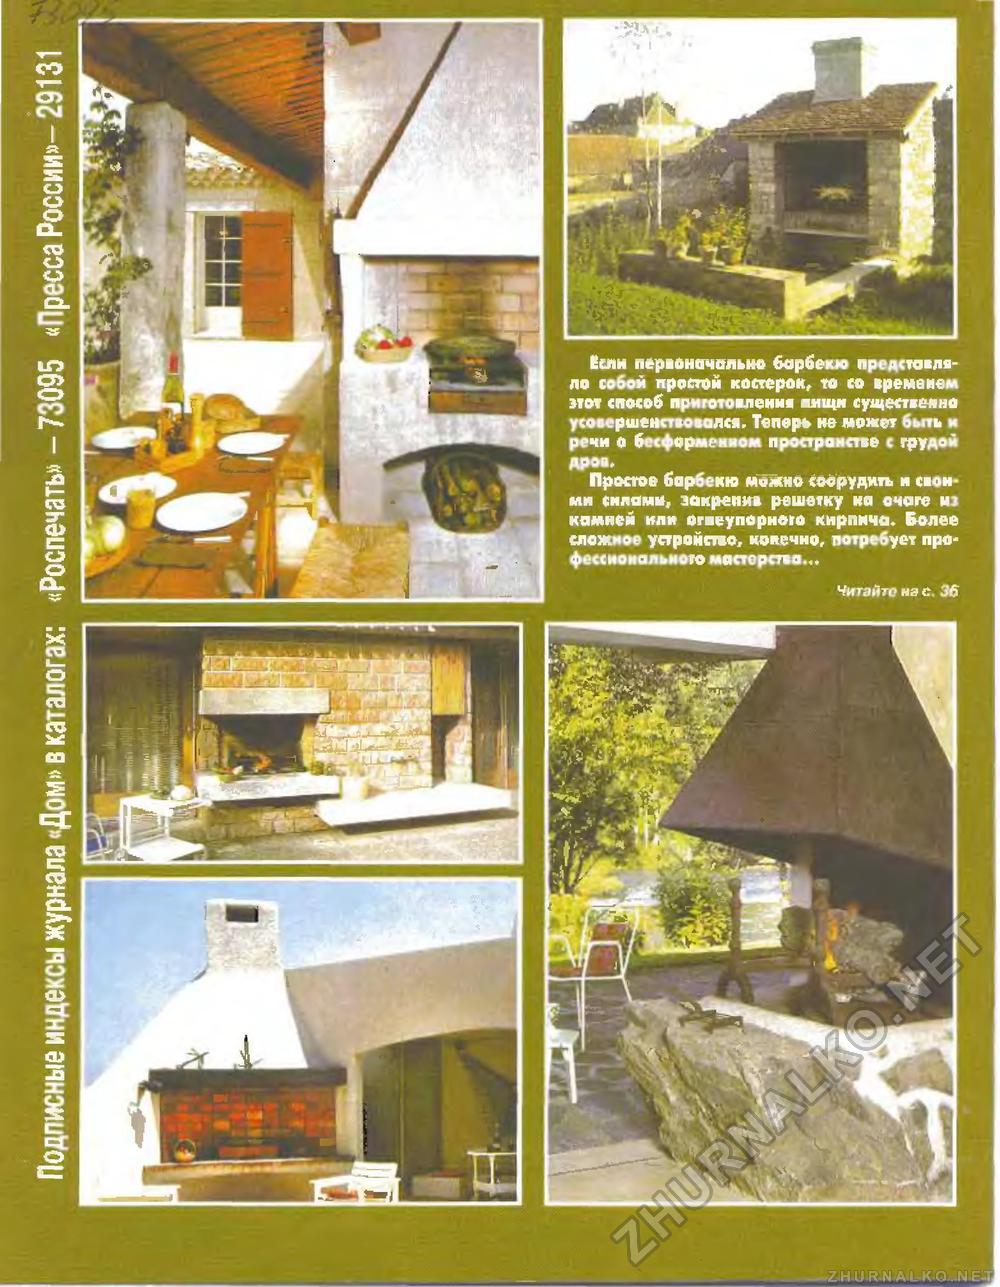 Дом 2006-10, страница 52